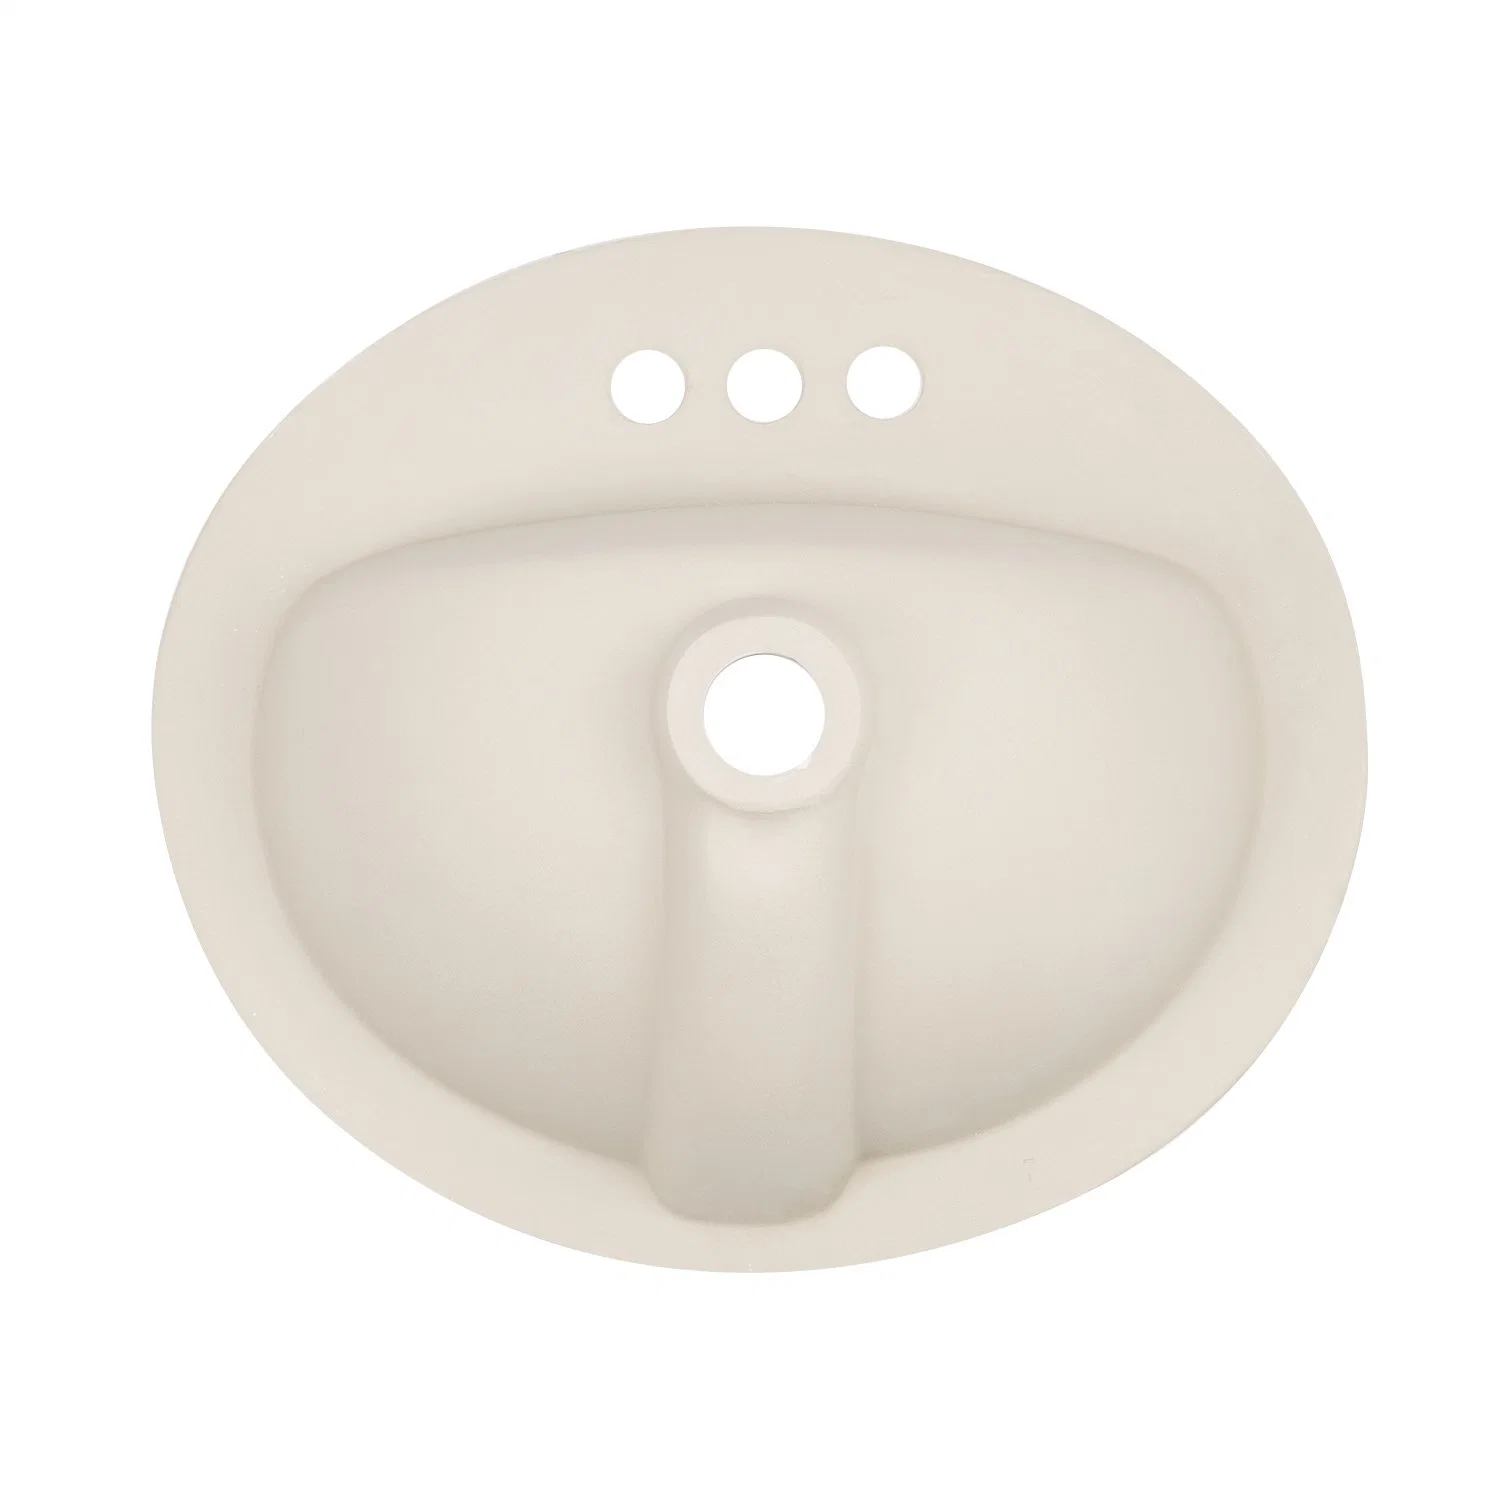 Heißer Verkauf Badezimmer Sanitärkeramik Schrank Keramik Eitelkeit Weiß Glasiert Toilette Porzellan Küche Above-Counter Granit Hand Waschtisch Drop-in Waschbecken